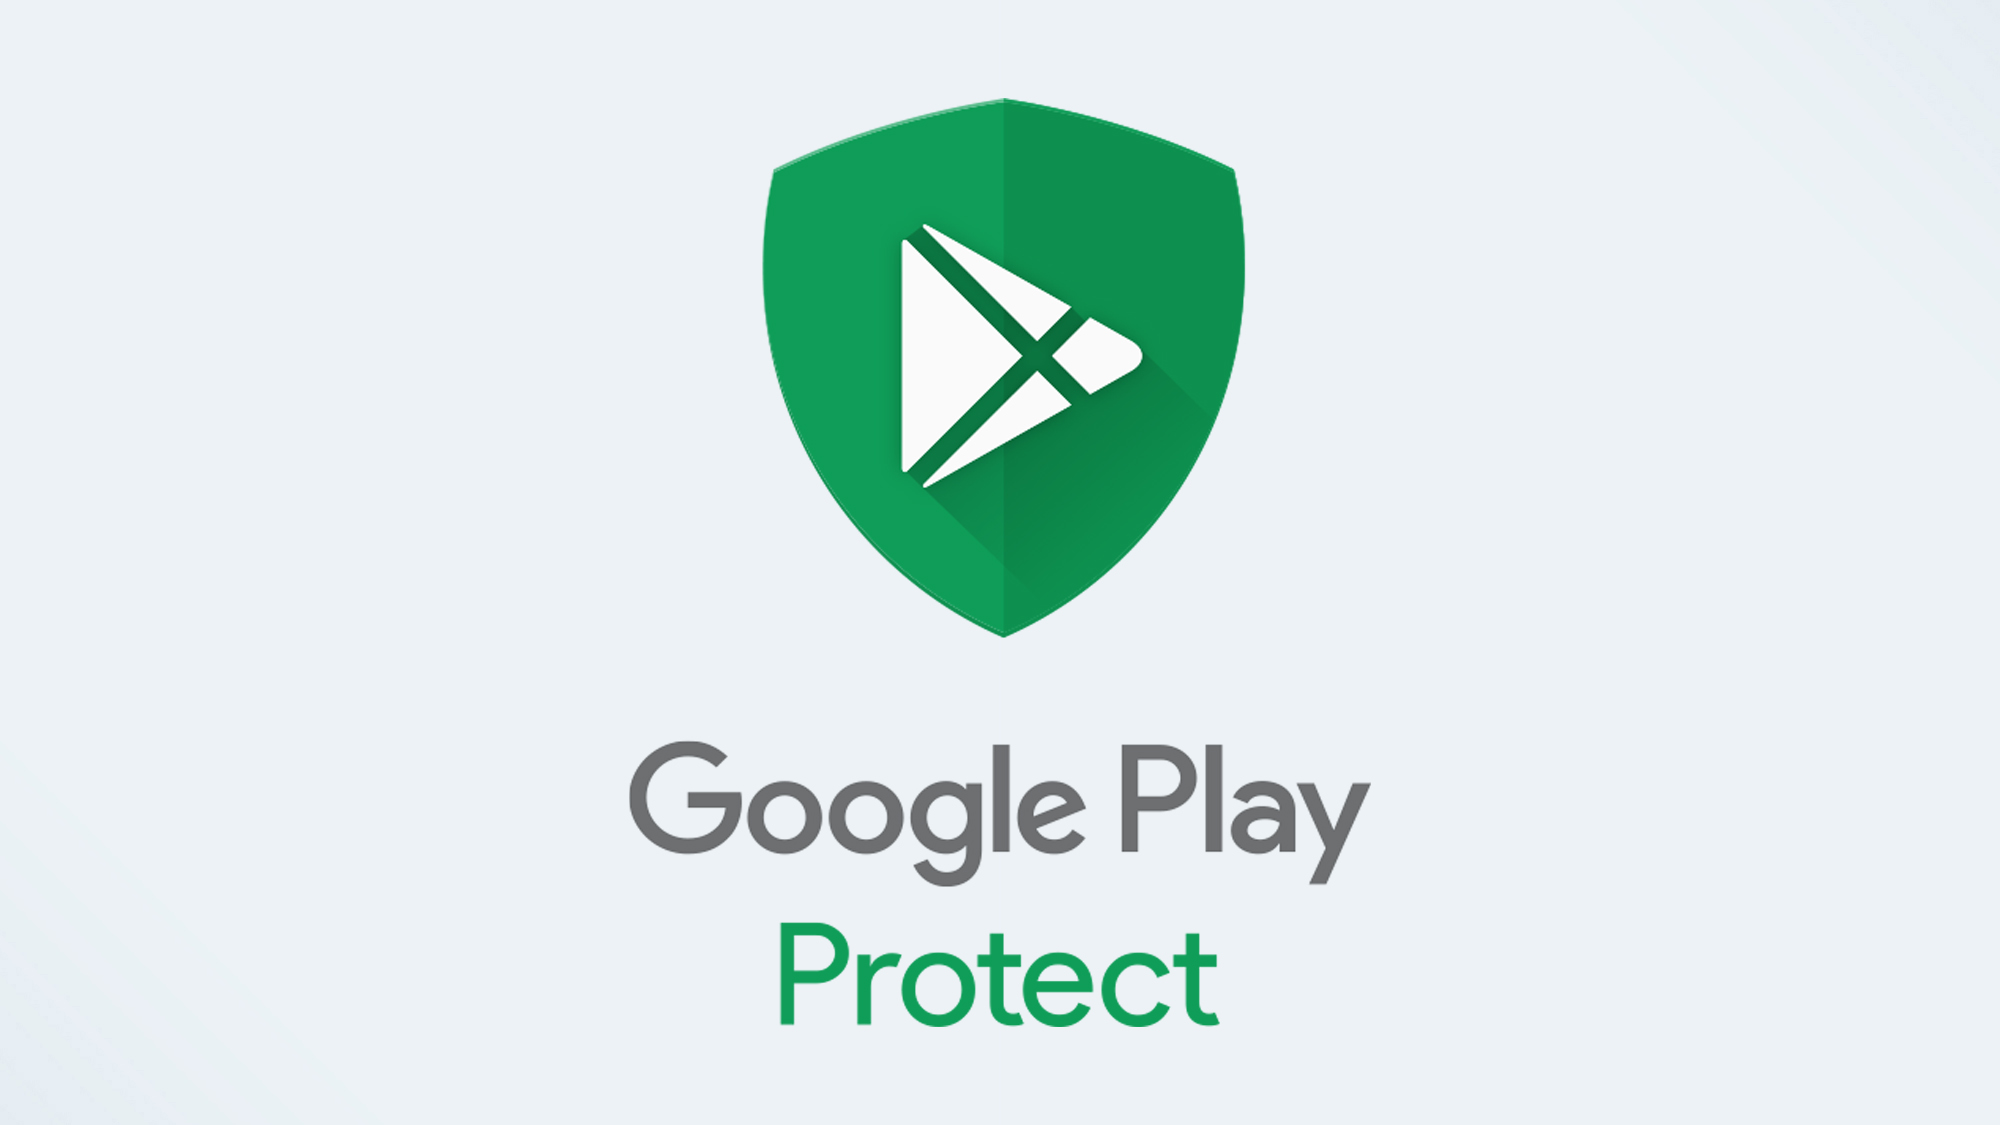 הלוגו של Google Play Protect